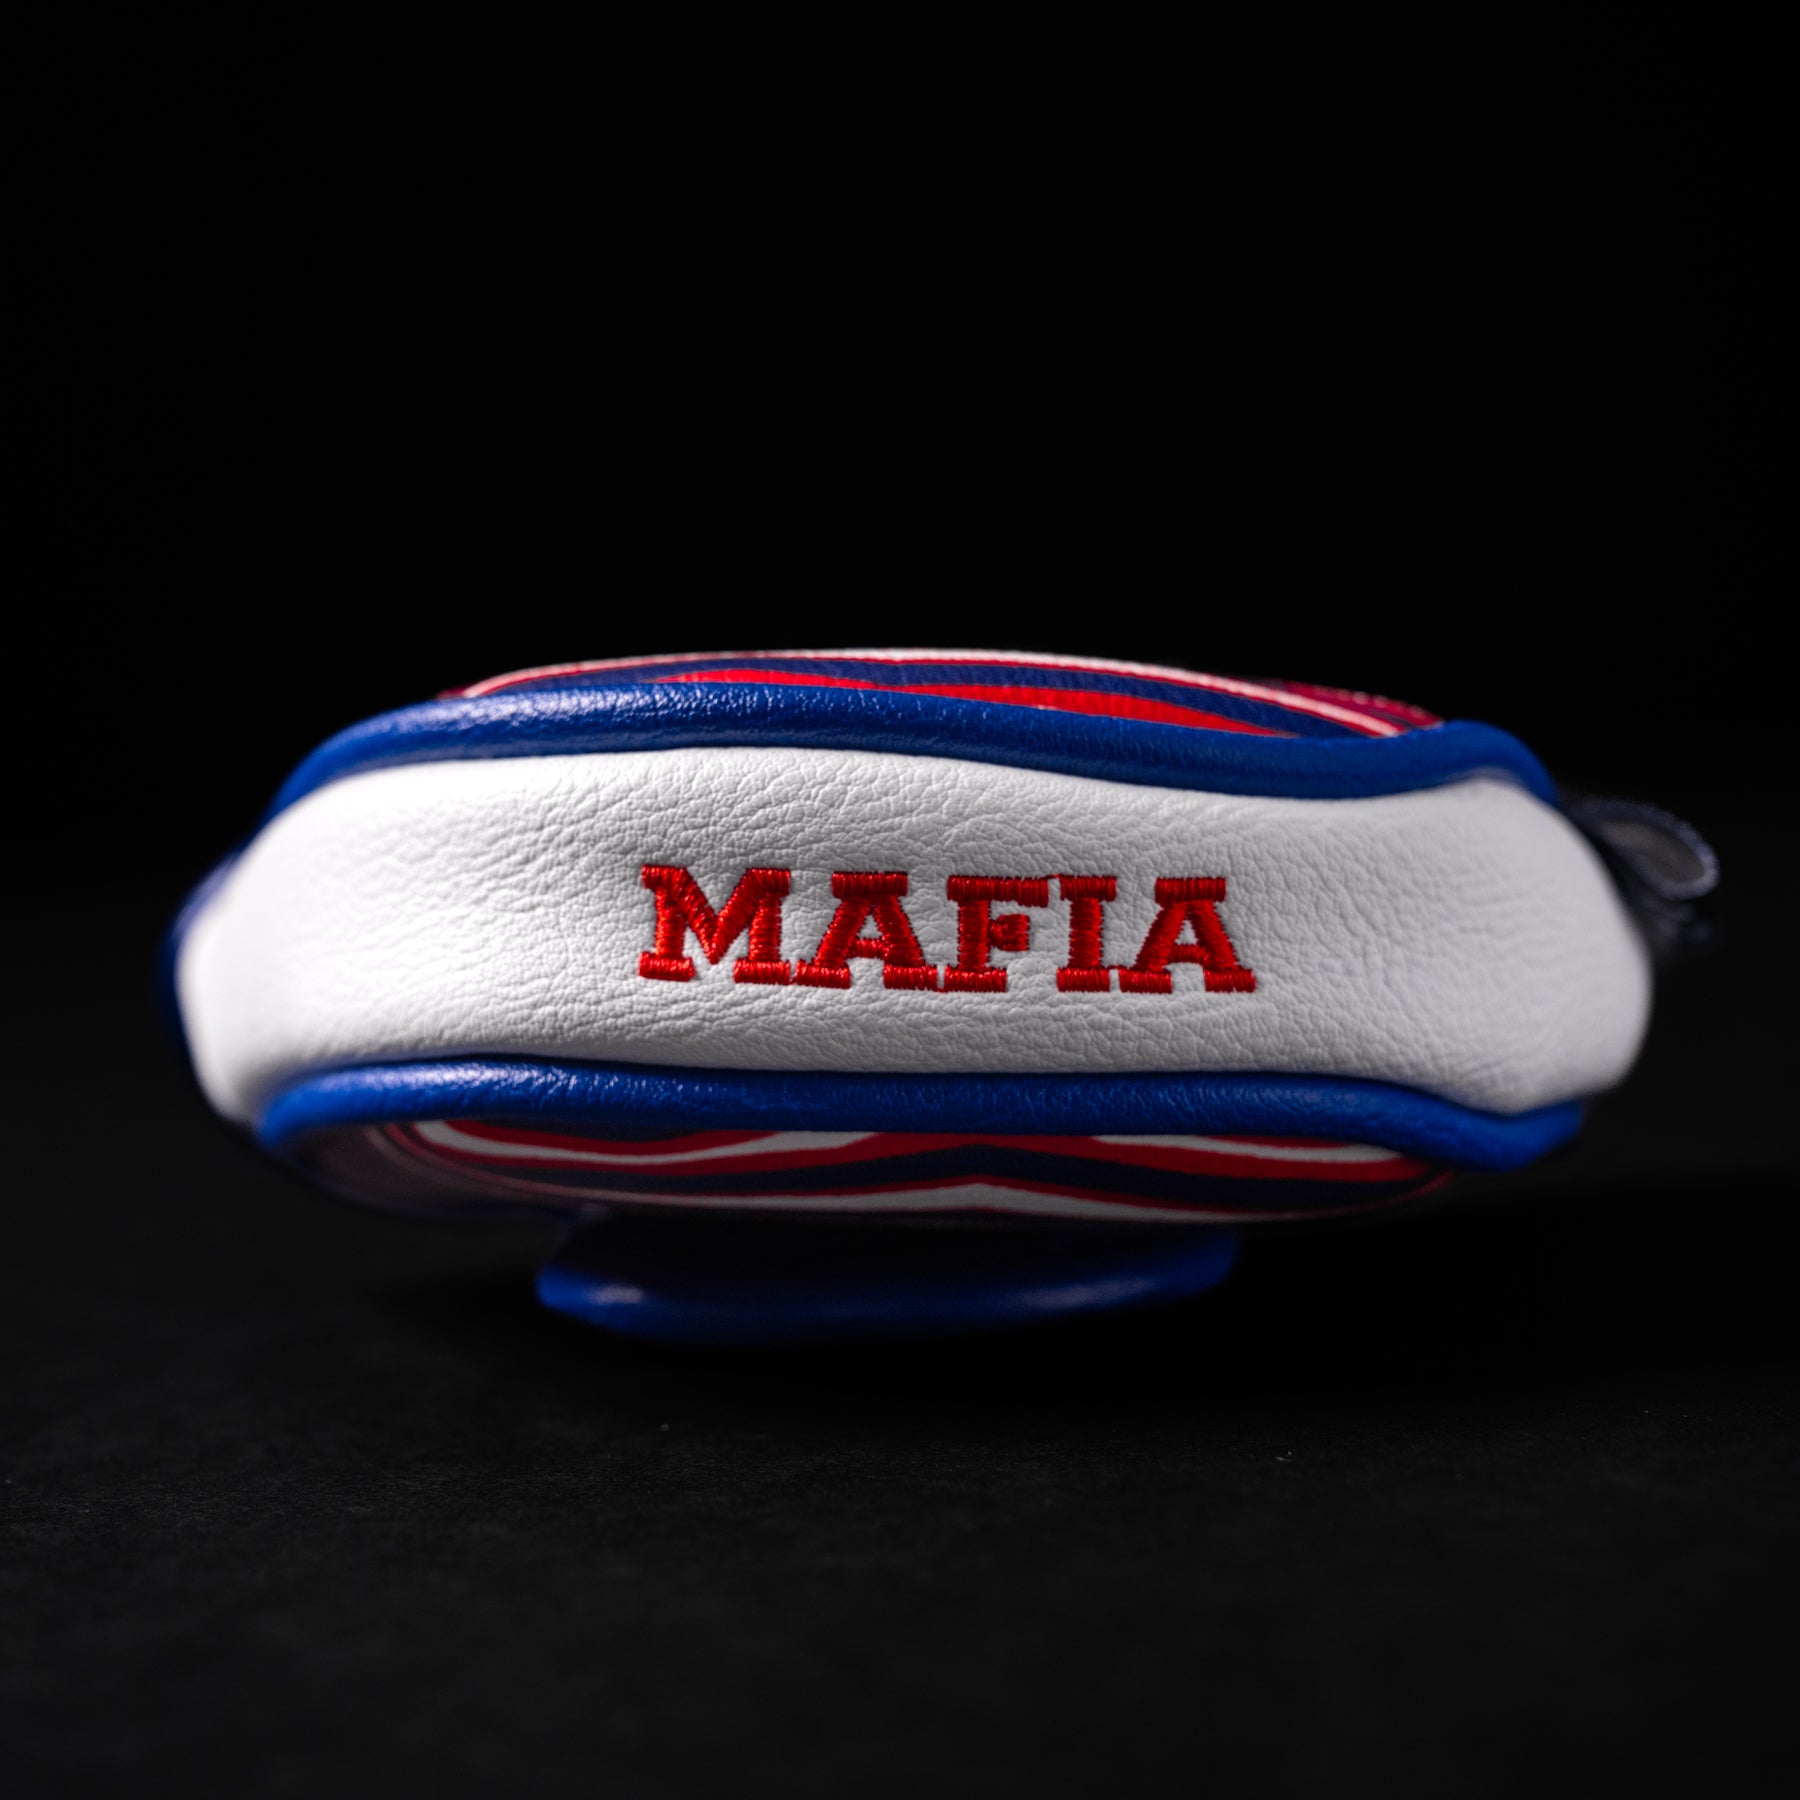 Mafia Mallet Putter Cover